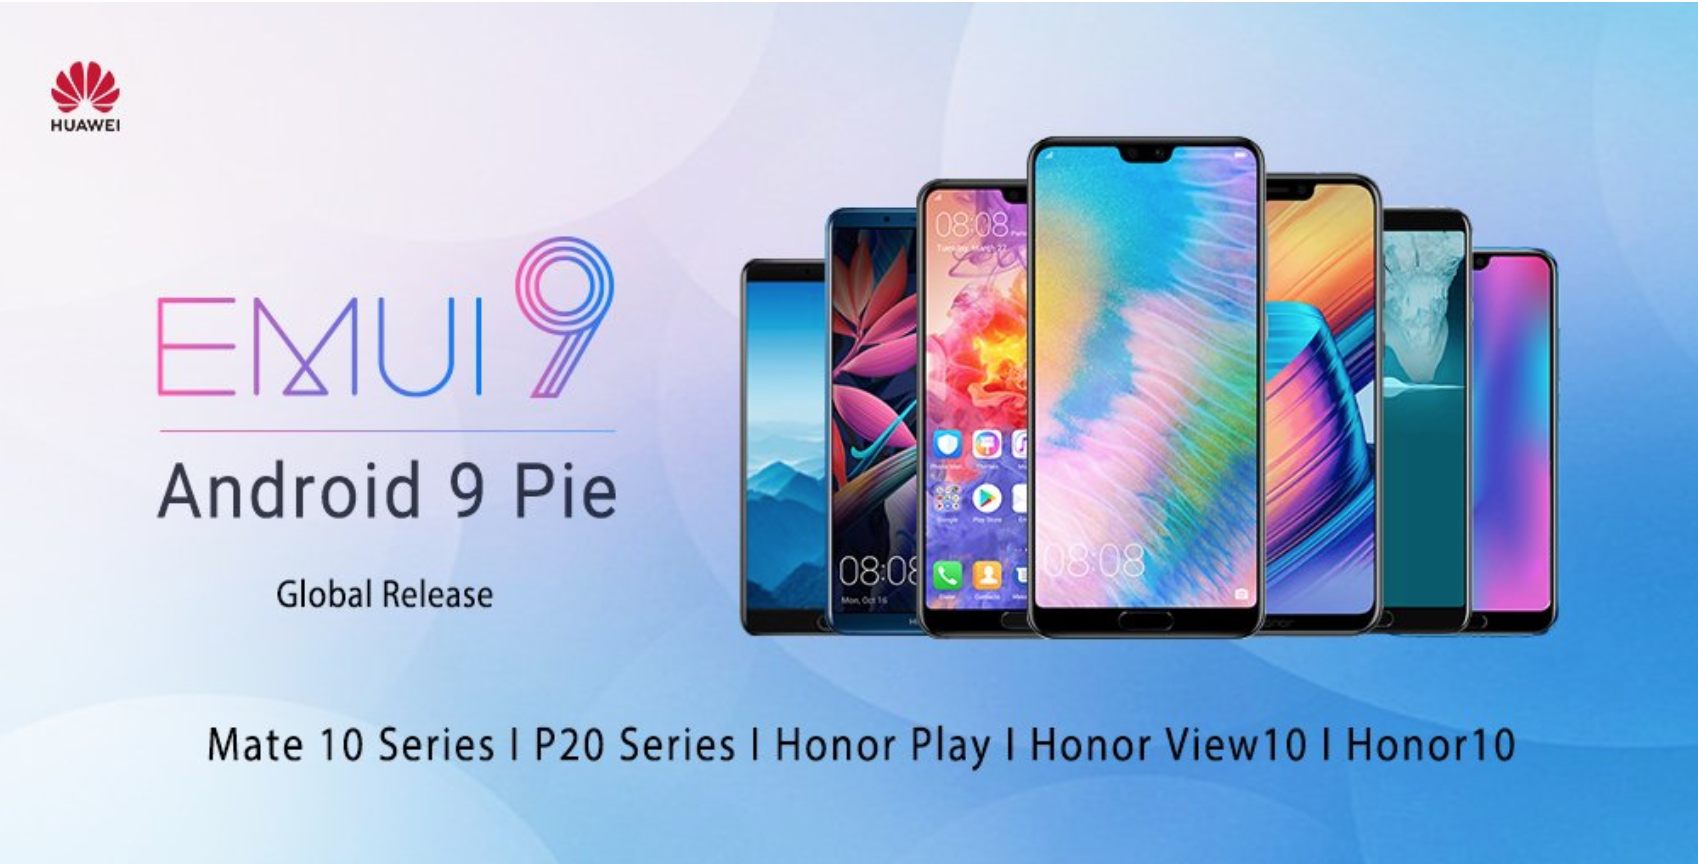 Honor 10 emui. EMUI 9 Huawei p20 Pro. EMUI 10 Honor 10. Huawei Android 9. Honor EMUI.